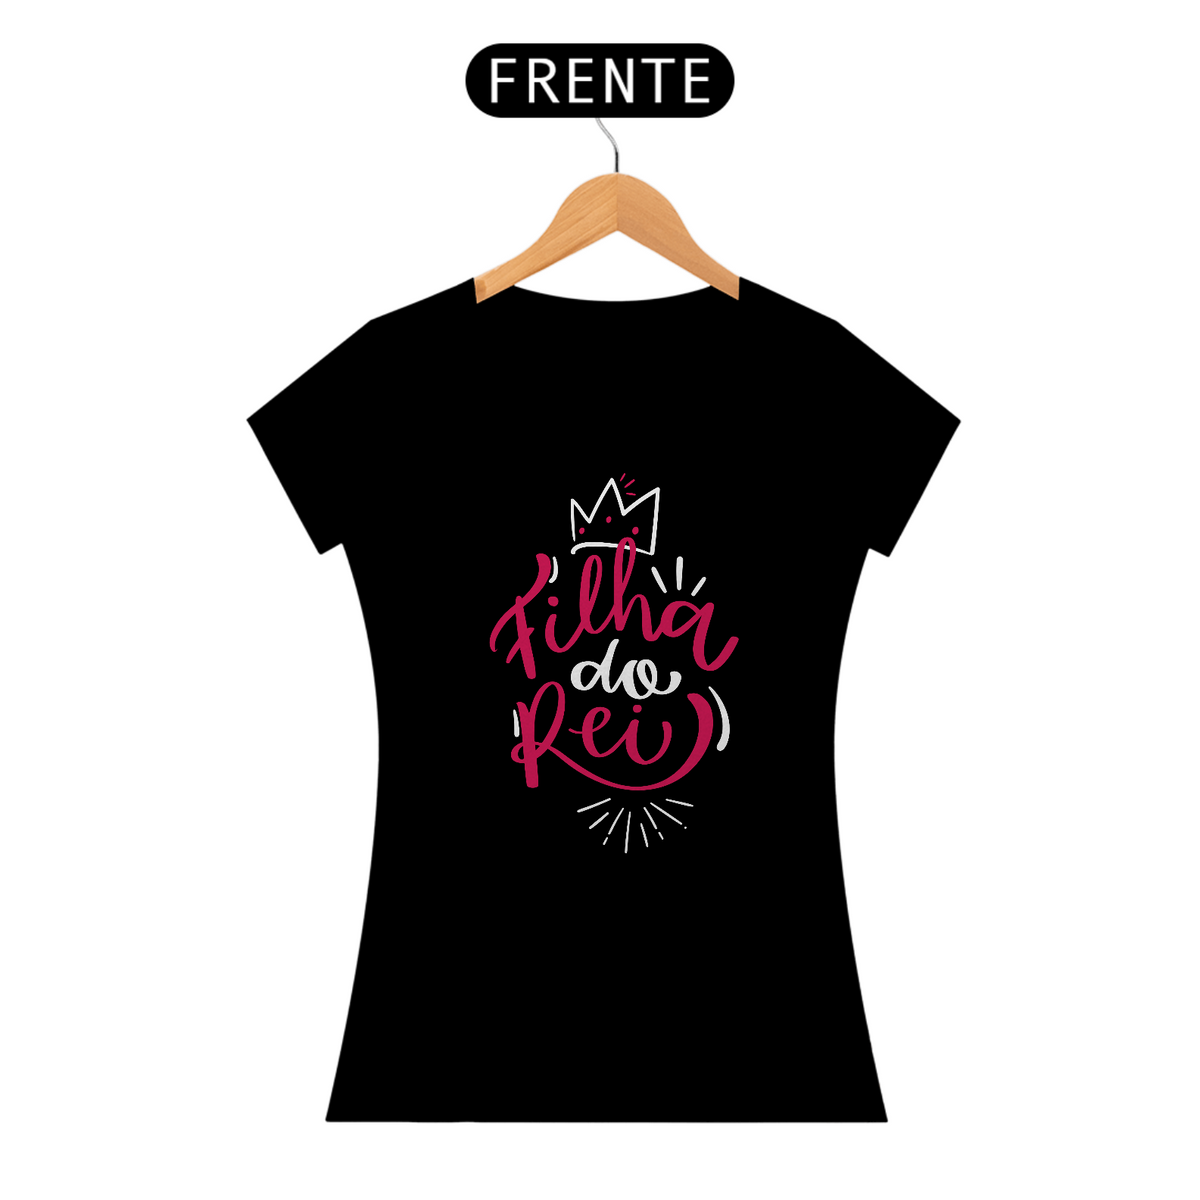 Nome do produto: Camiseta Feminina PRIME - Filha do Rei